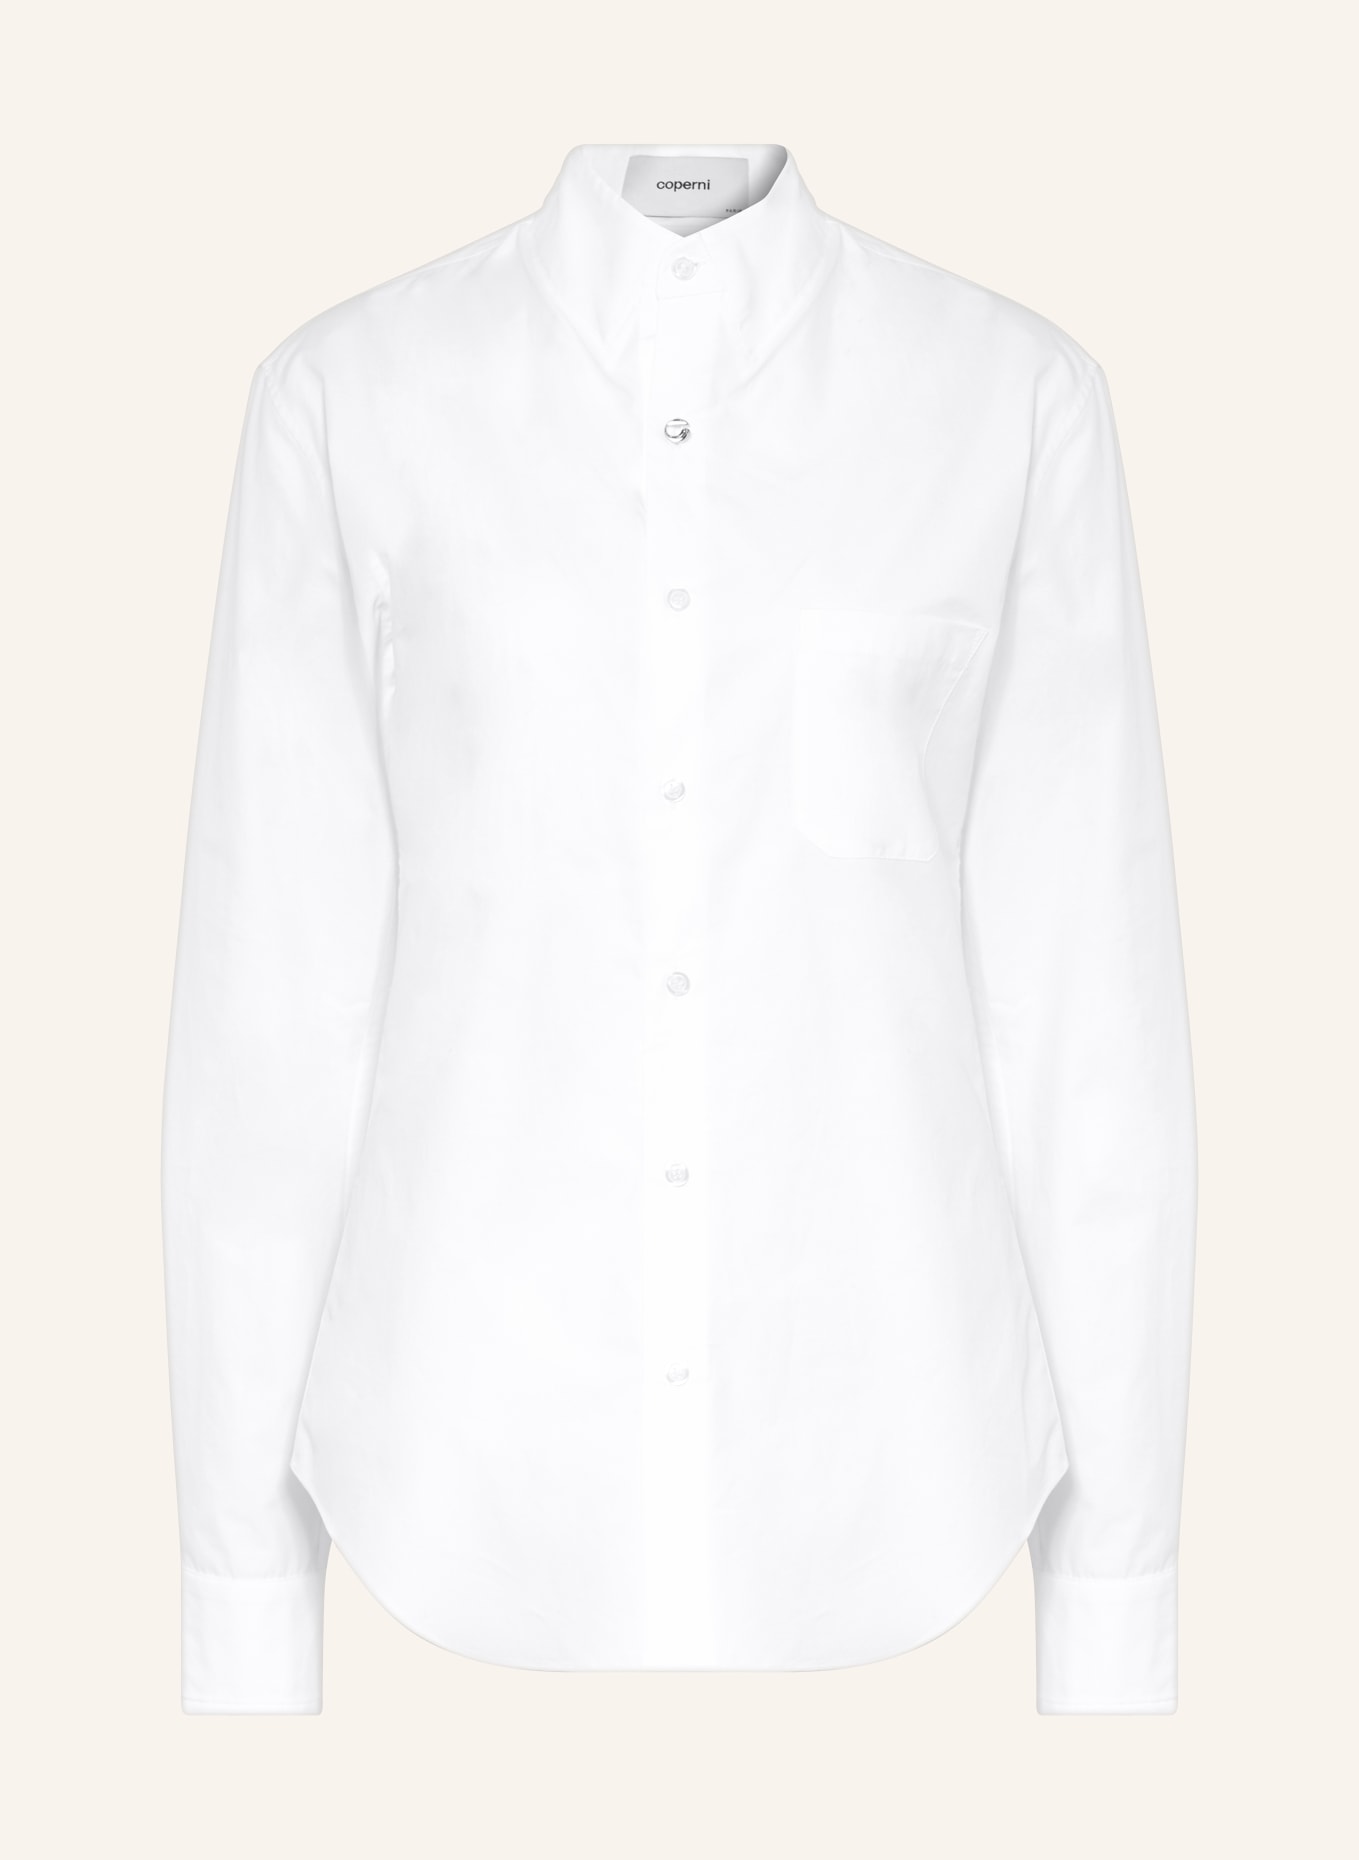 coperni Shirt blouse, Color: WHITE (Image 1)